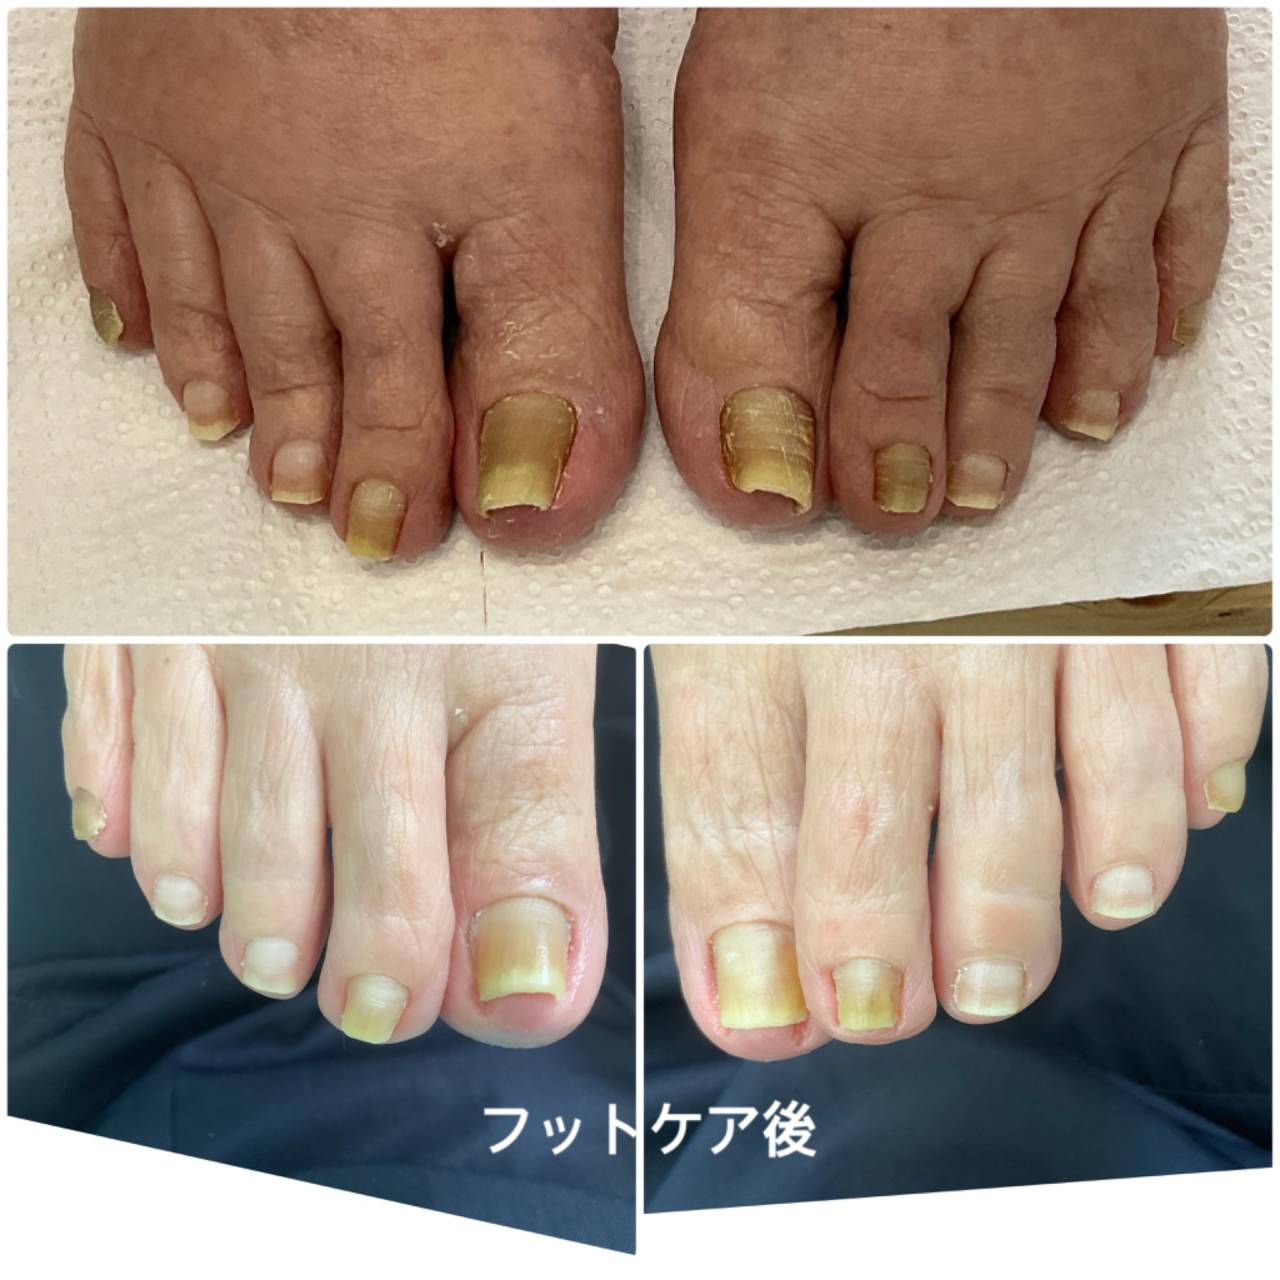 高齢者のフットケア | 爪ケア後の手指や足先をご紹介 | 宜野湾市の爪 